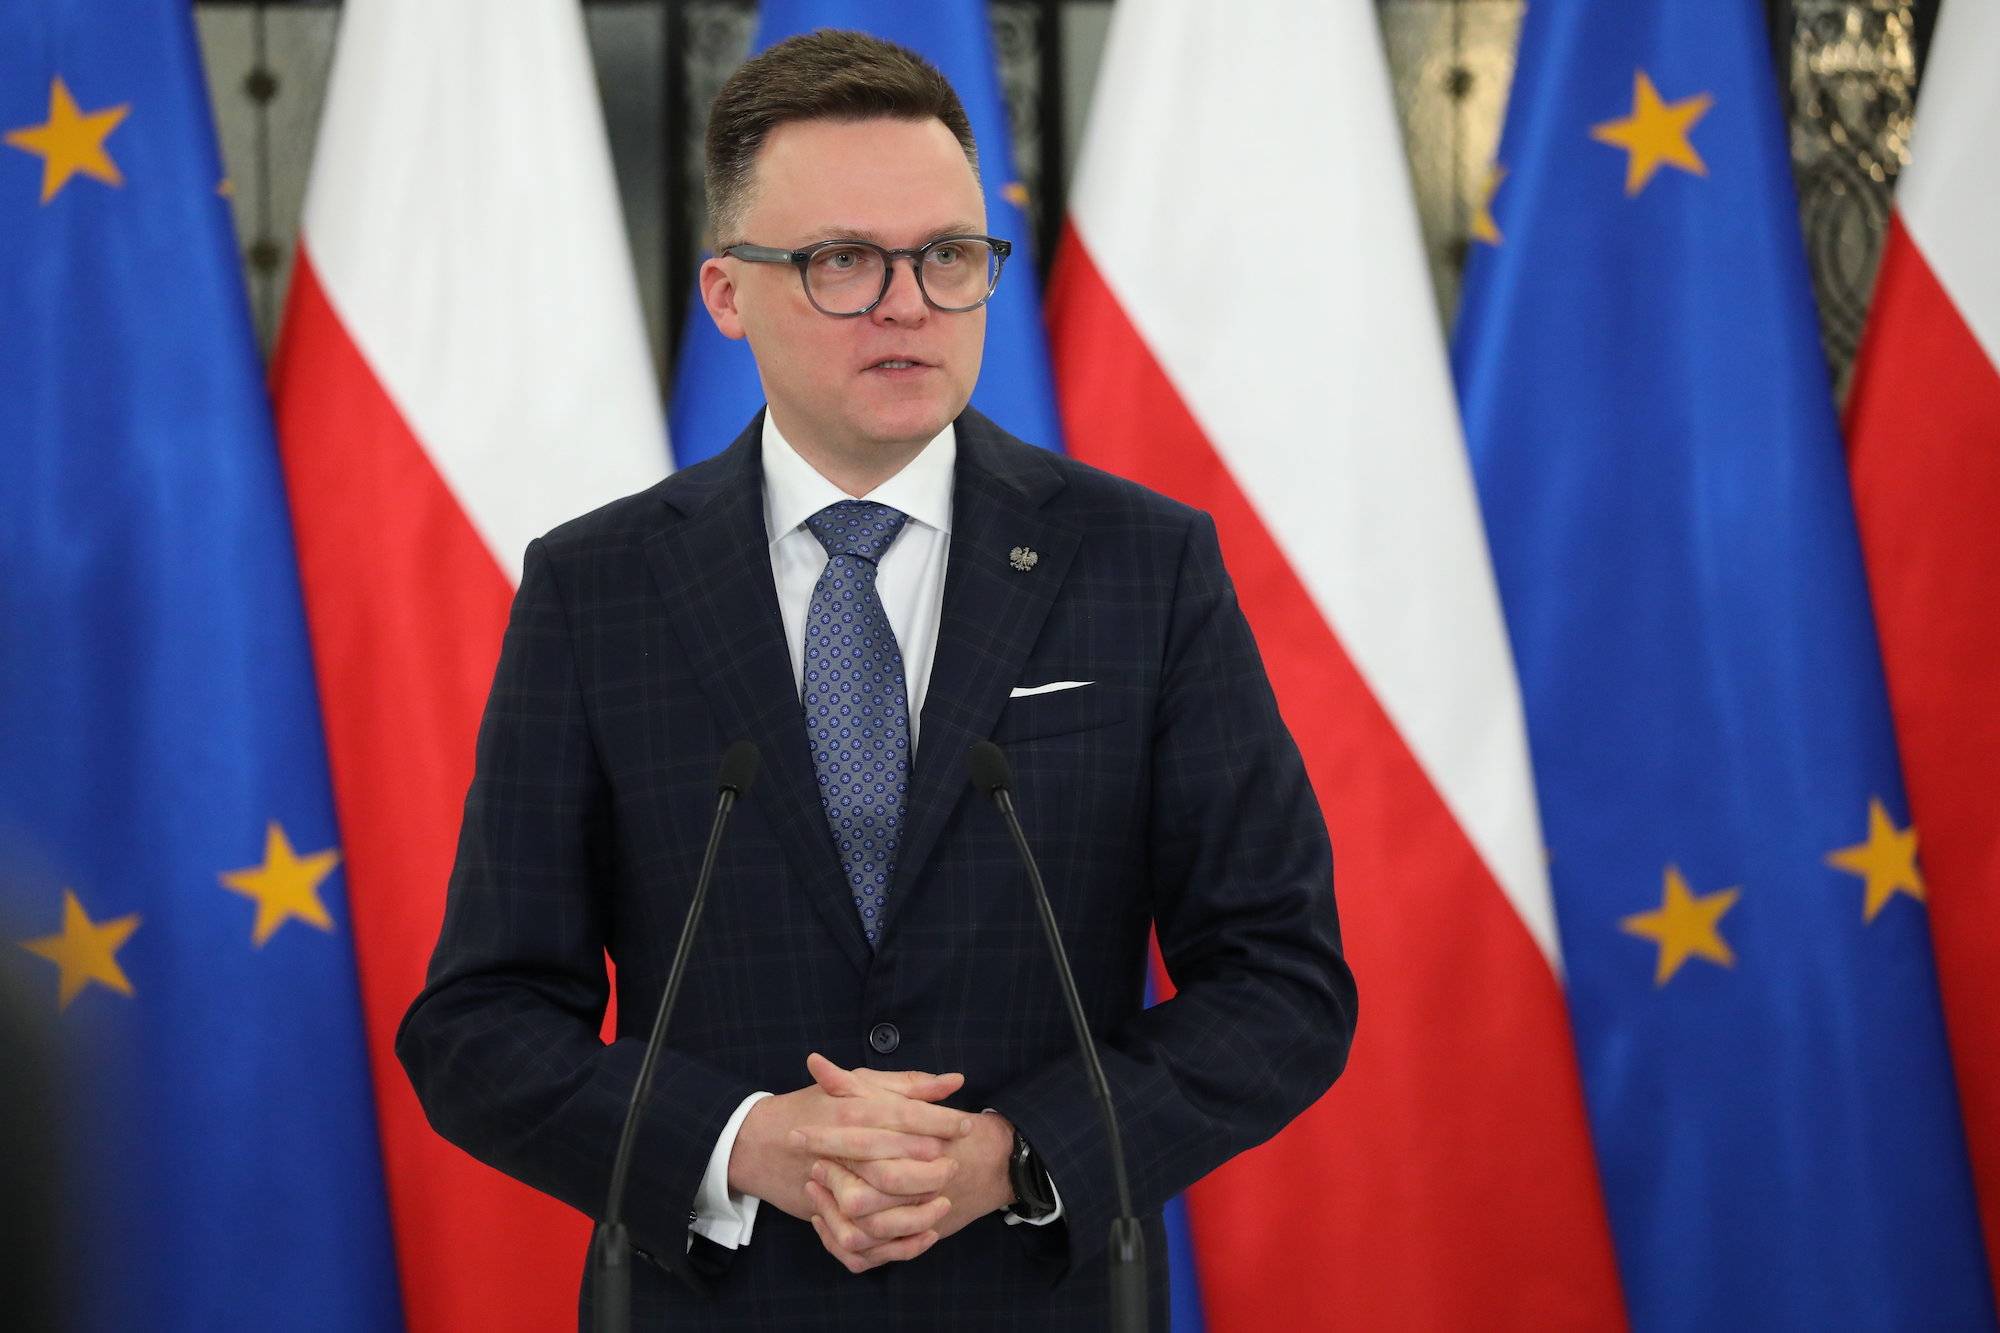 Szymon Hołownia na konferencji prasowej na tle flag Polski i Unii Europejskiej. Mówi do mikrofonów ubrany w garnitur i niebieski krawat.